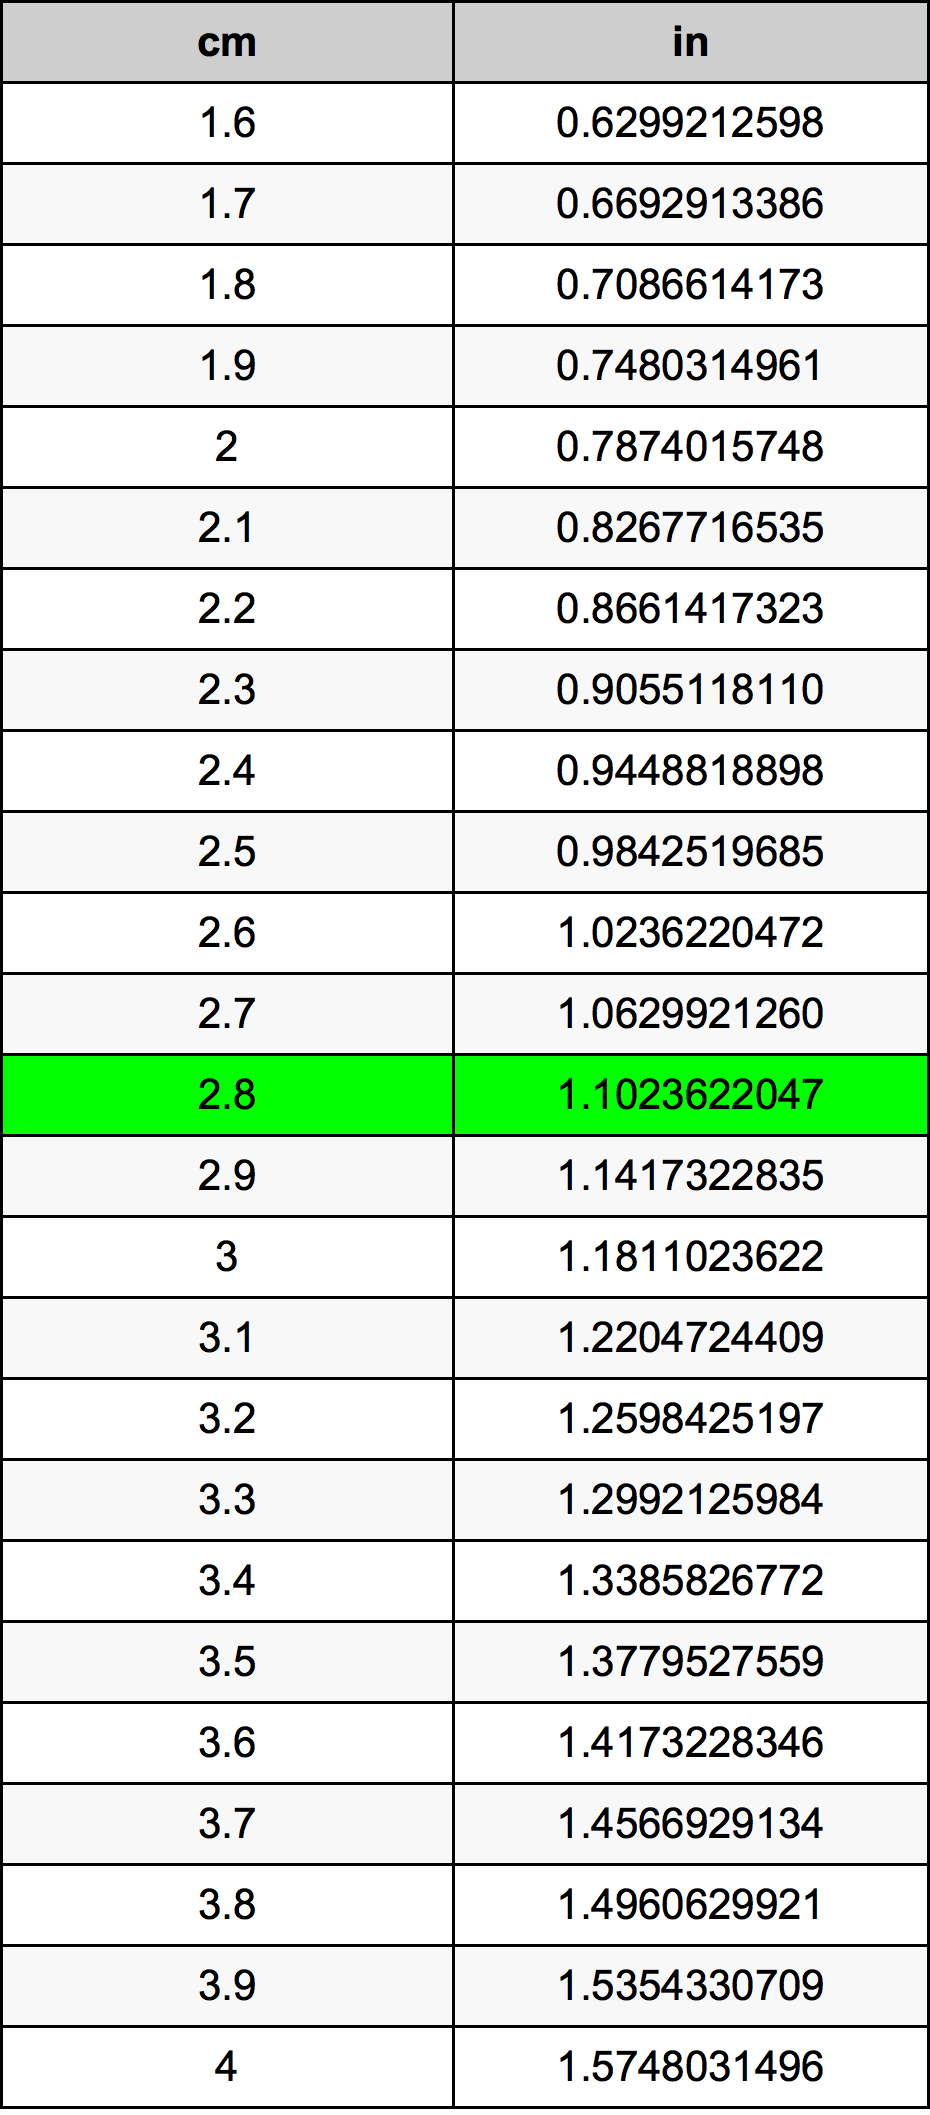 2.8 Centiméter átszámítási táblázat